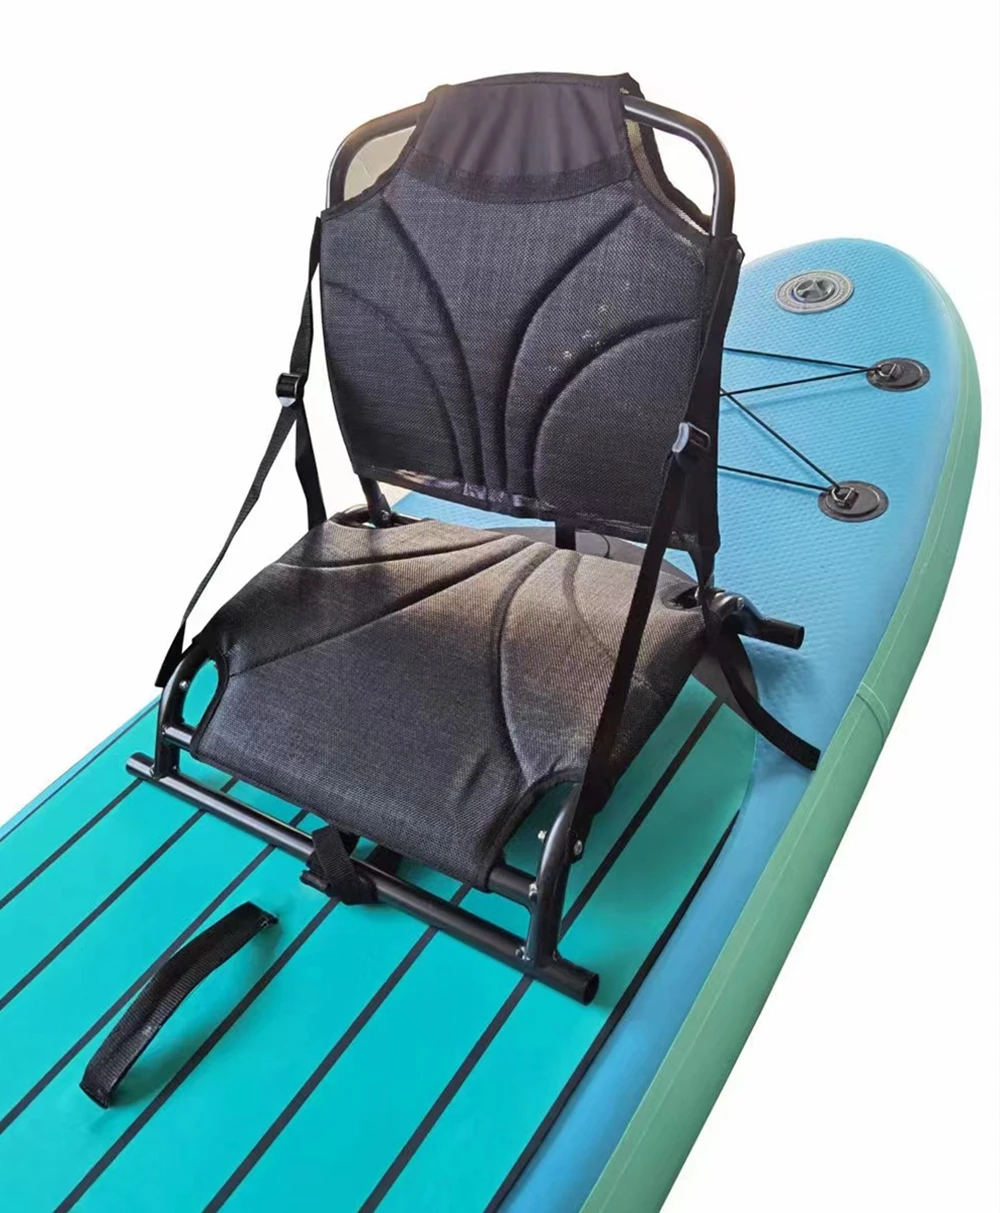 Kayak Cushion Chair Seat, Aluminium Backrest Fish Board Surfboard